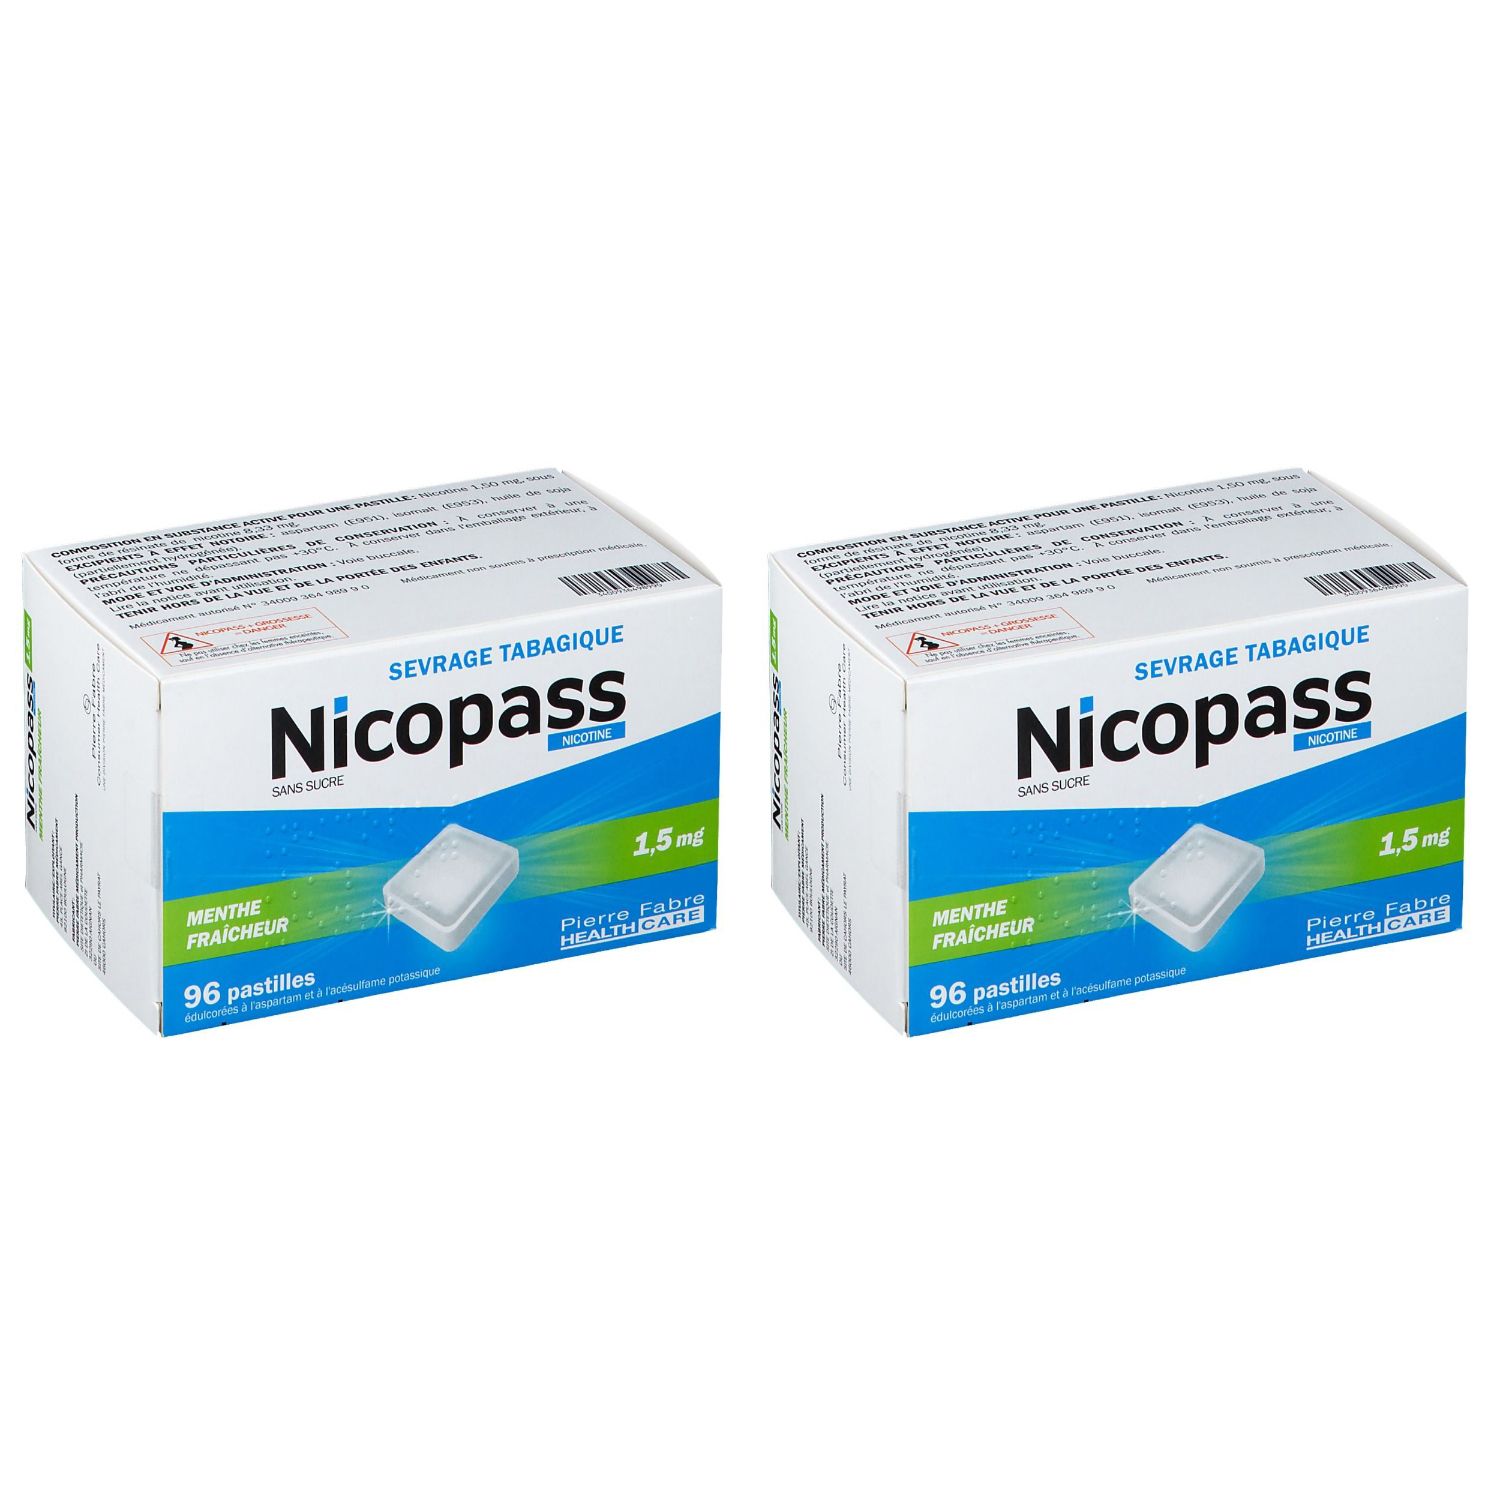 Nicopass® Menthe fraicheur s/s 1,5 mg